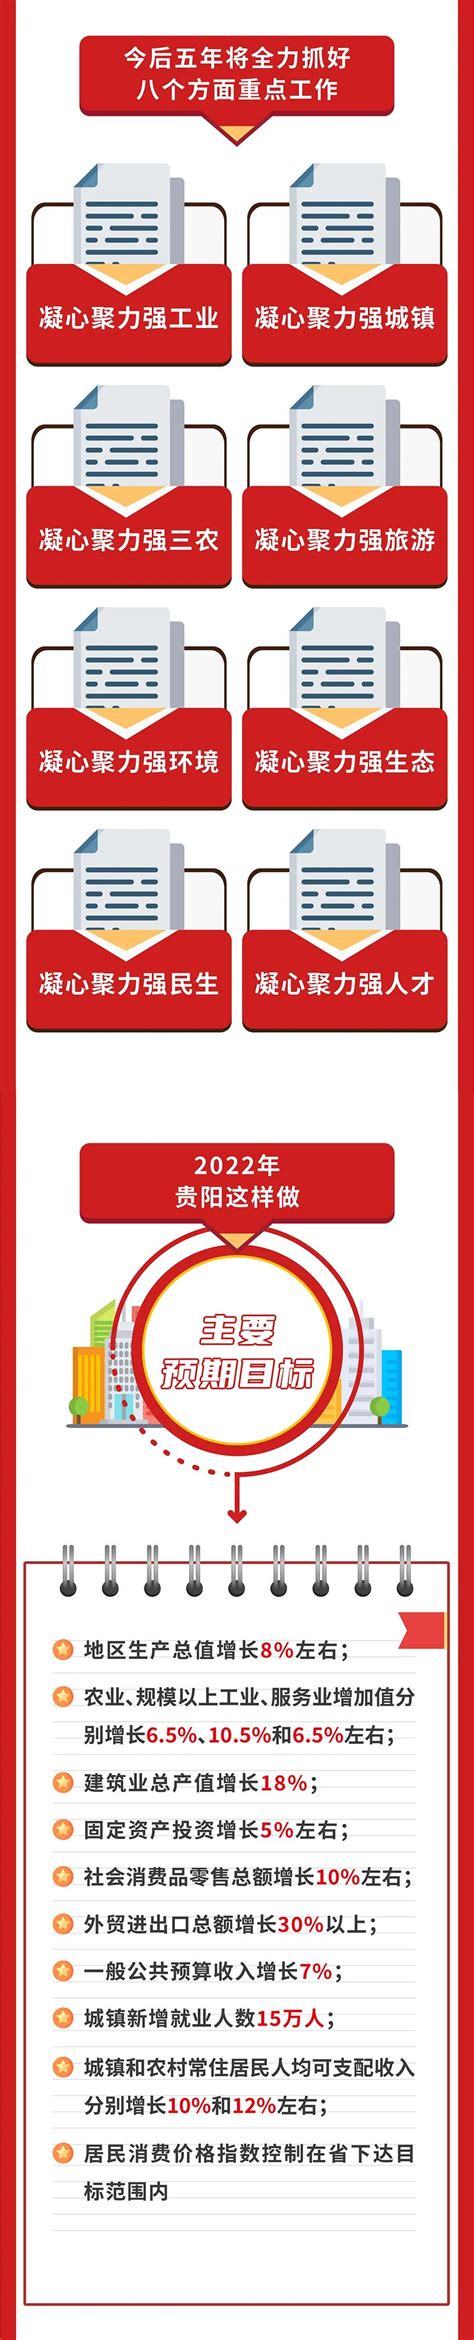 【图解】2022年贵阳市《政府工作报告》 - 贵阳市房地产业协会